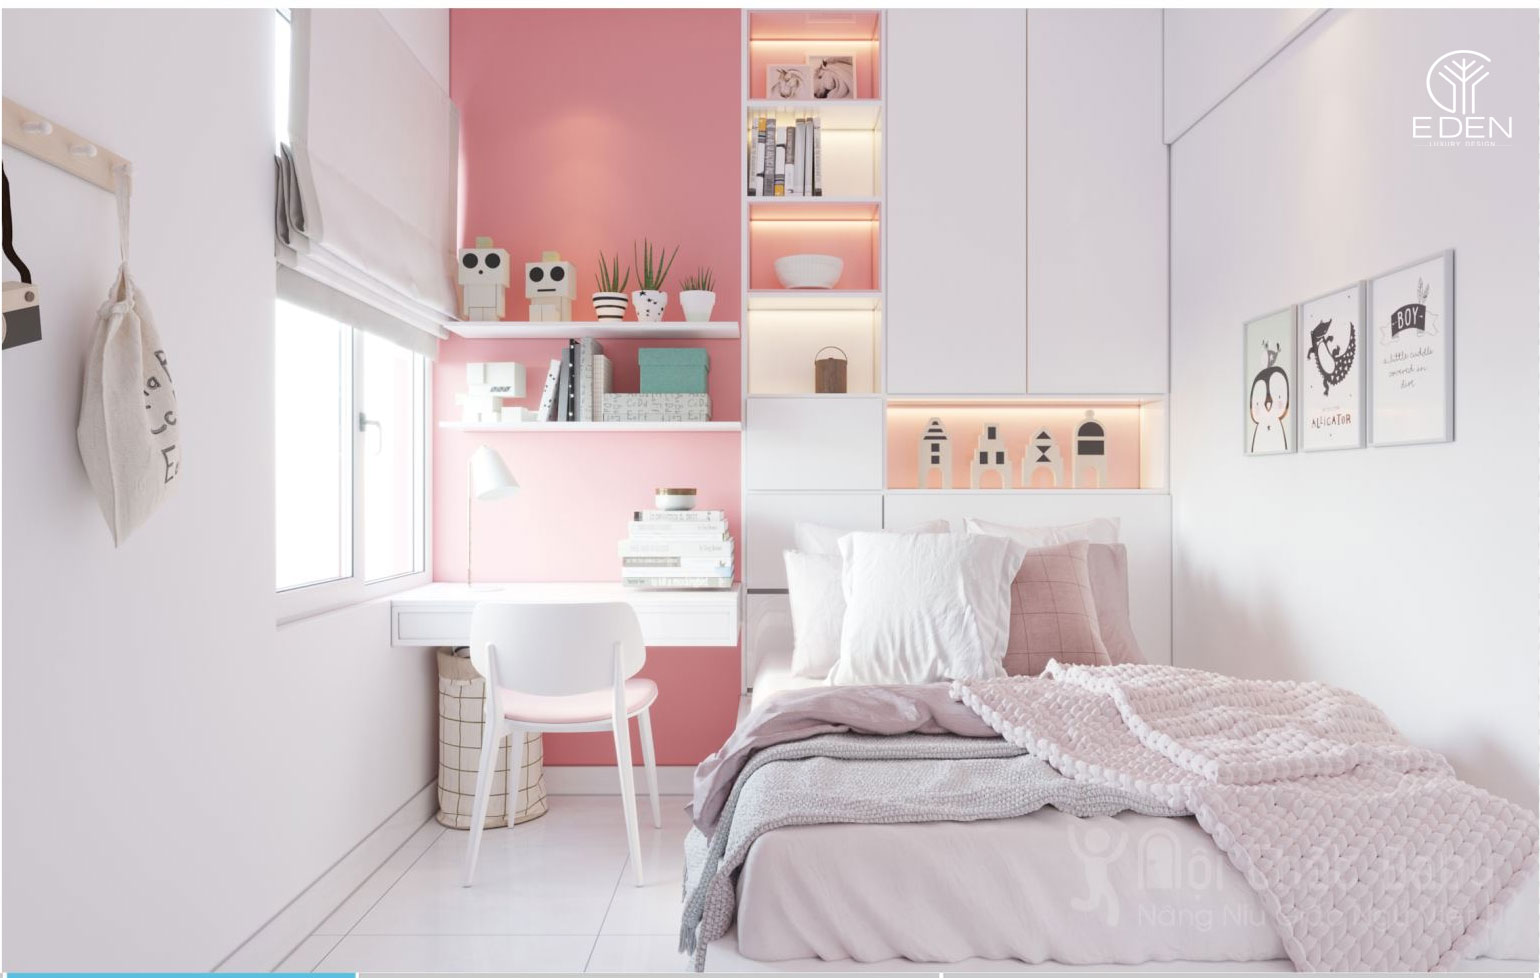 Thiết kế căn phòng ngủ màu hồng nội thất xanh cho bé hình 4 